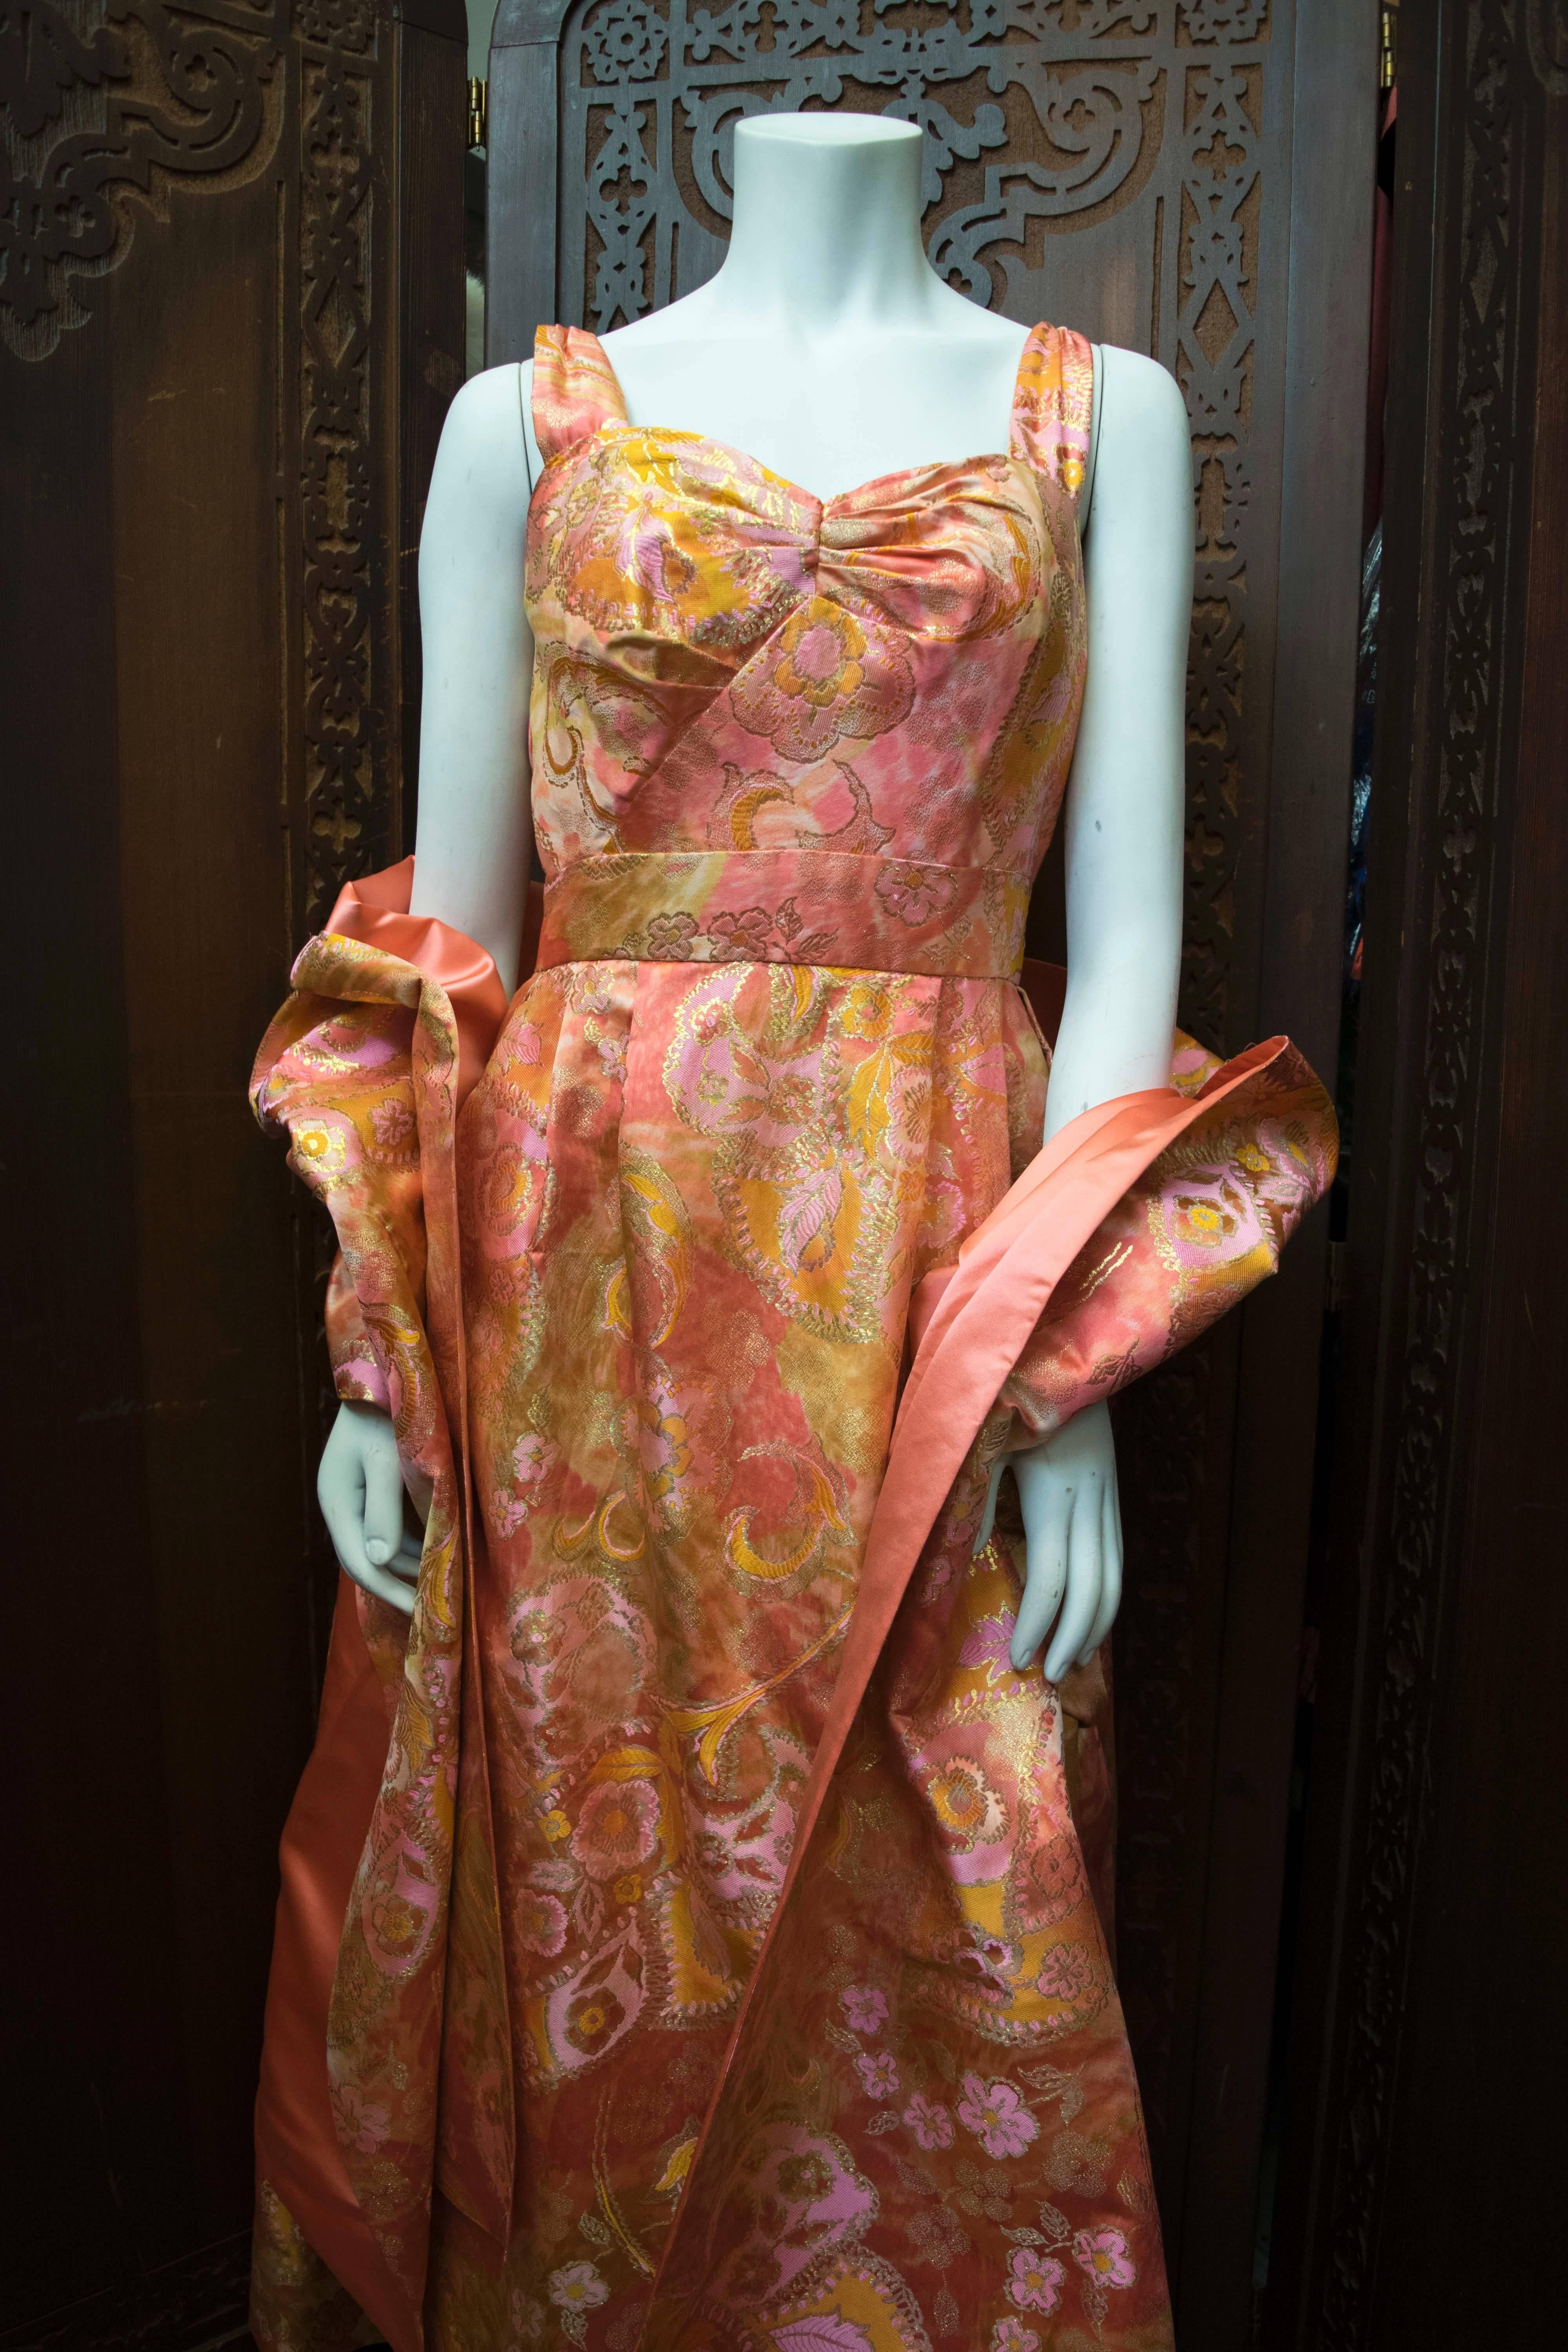 robe et châle des années 1960 

B 30
W 24
H 40
L 55